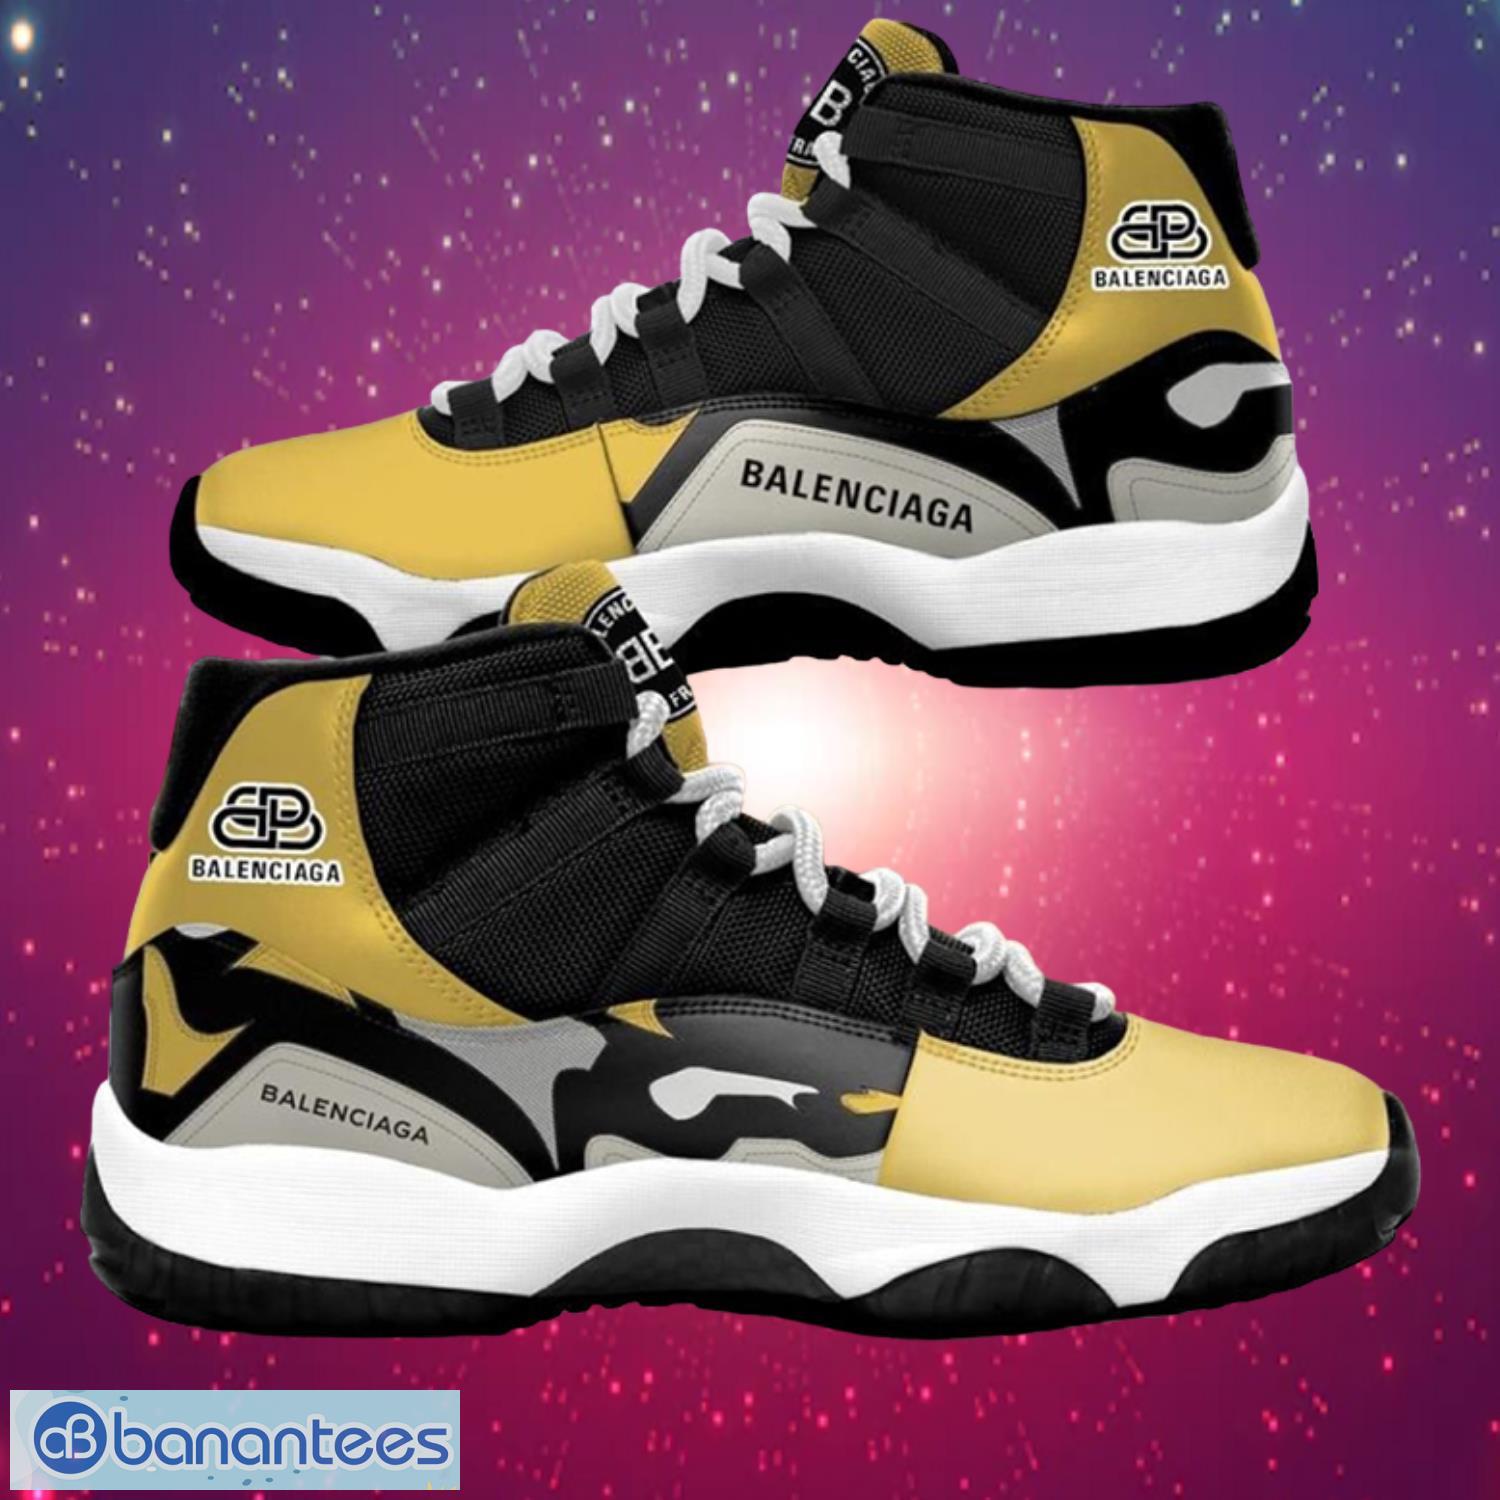 Balenciaga Yellow Air Jordan 11 Shoes Product Photo 1